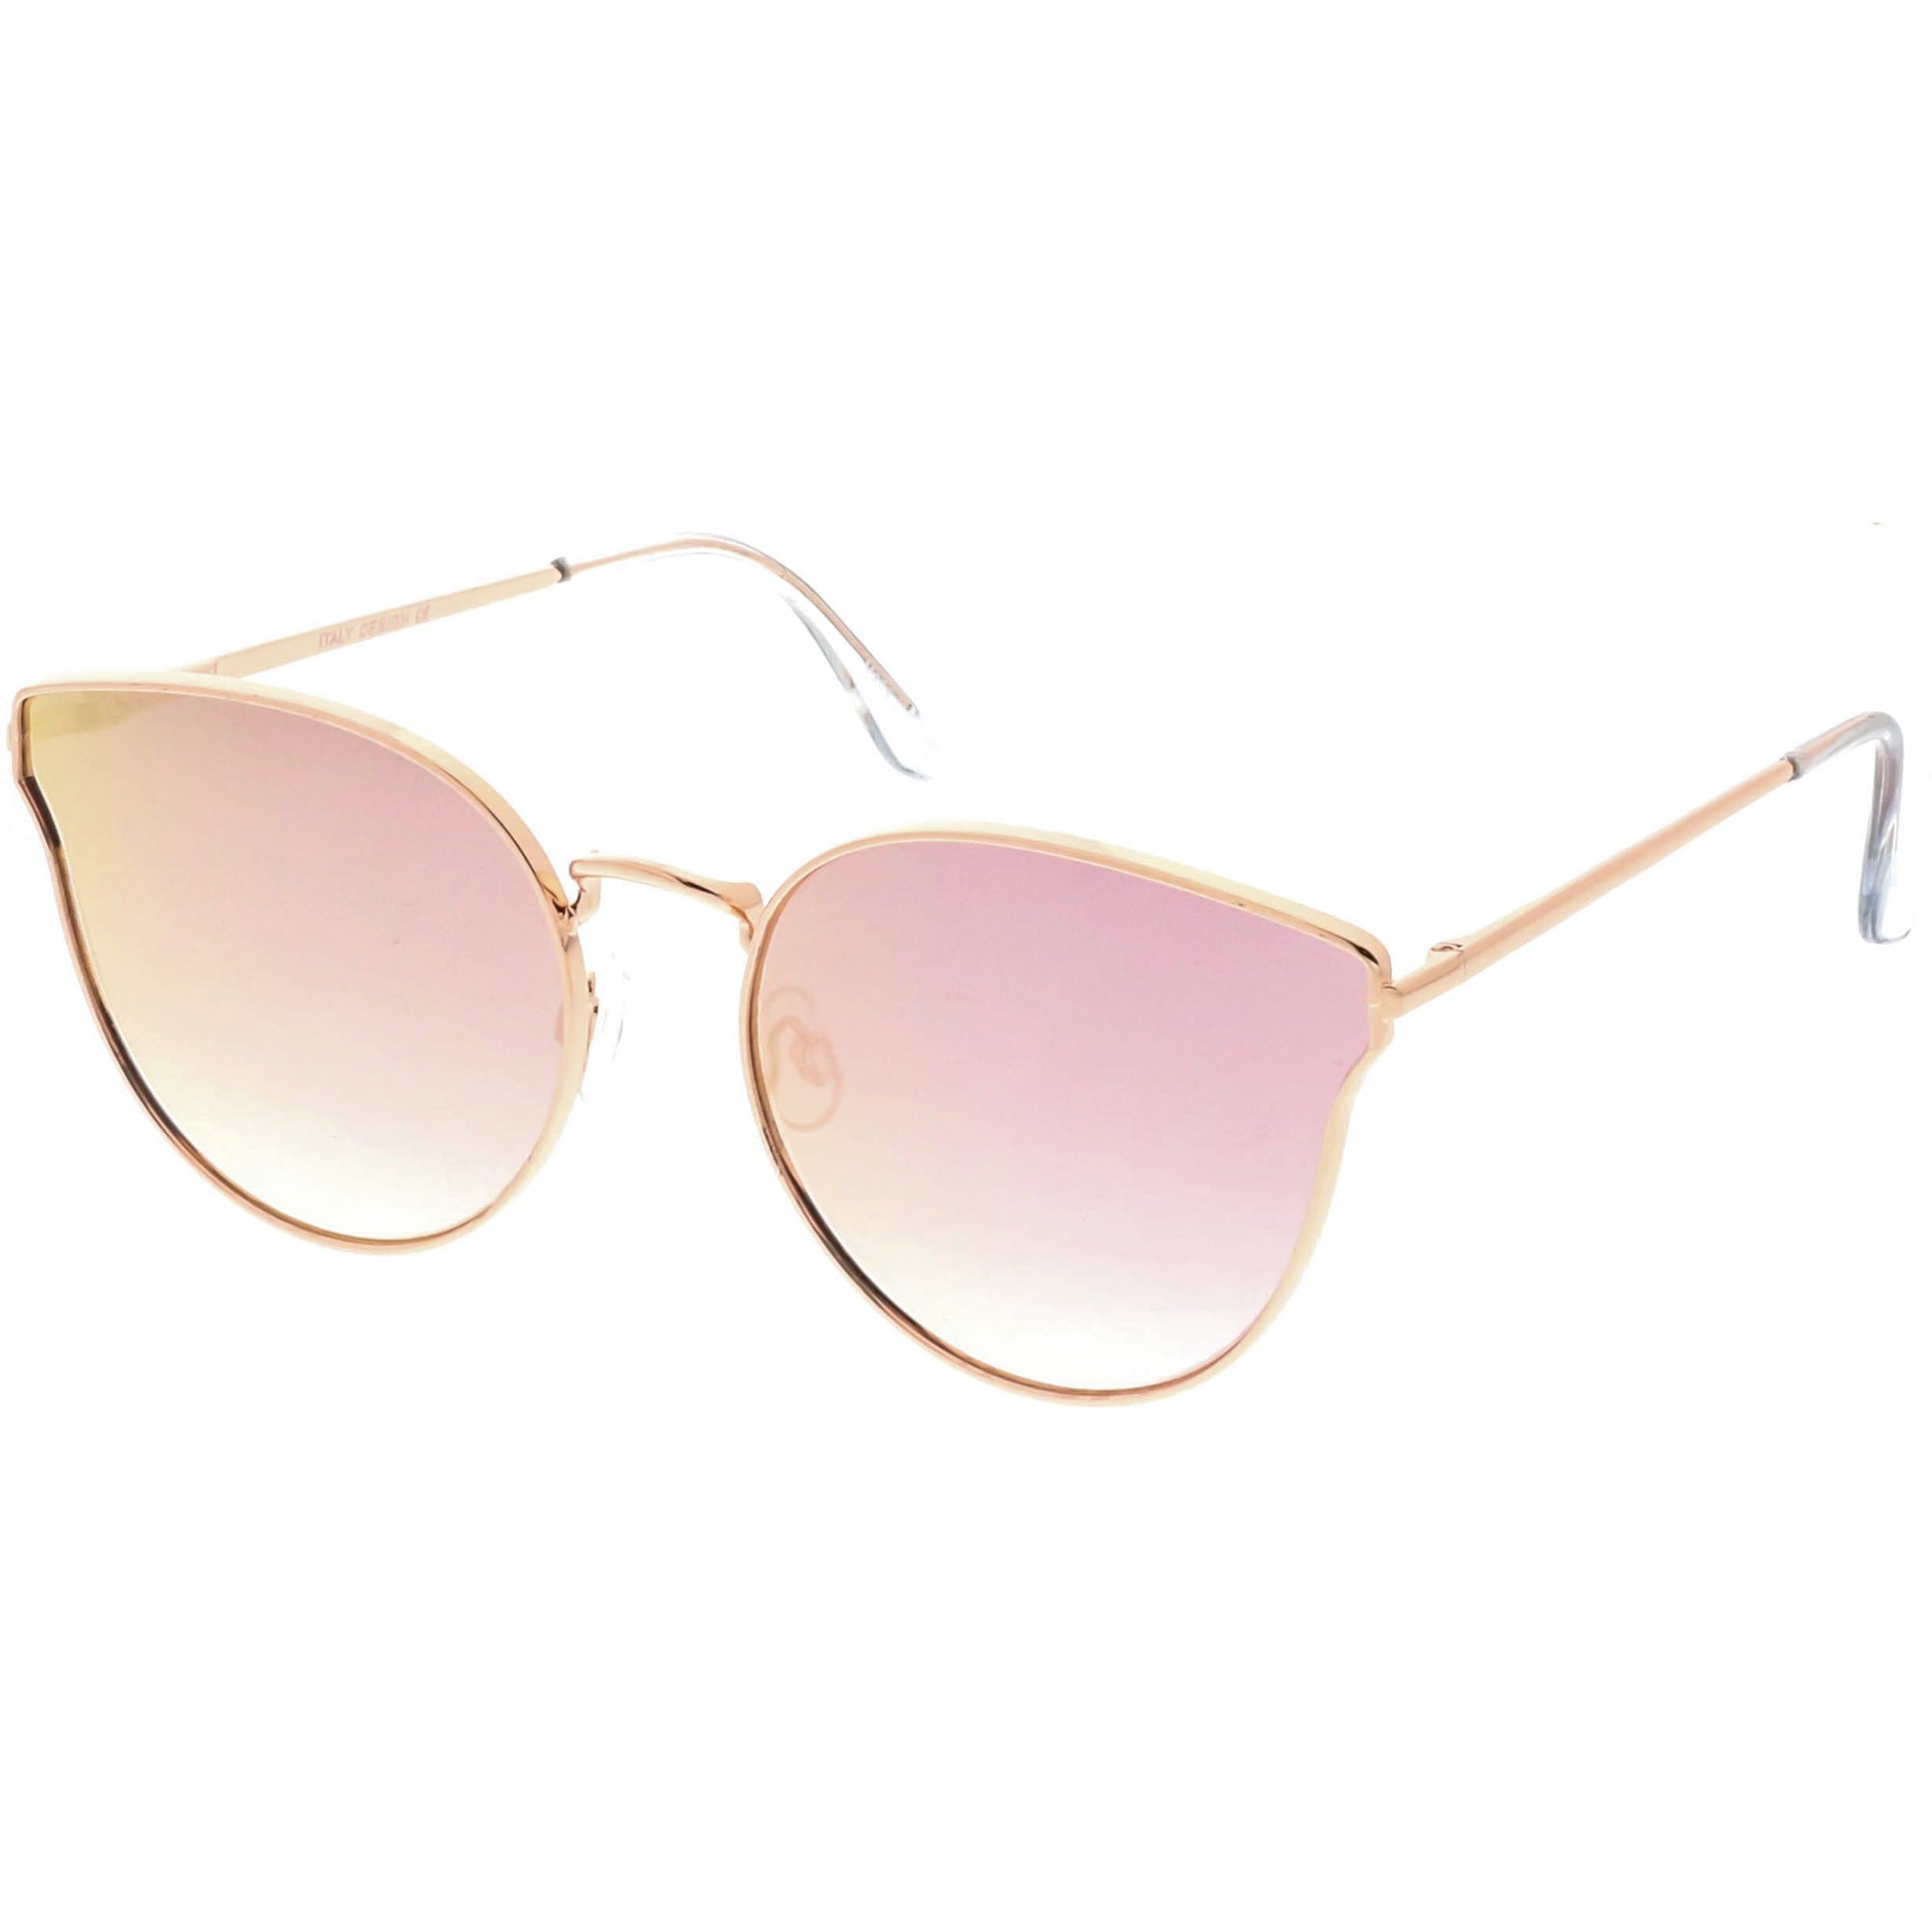 Women's Premium Mirrored Flat Lens Cat Eye Sunglasses - zeroUV